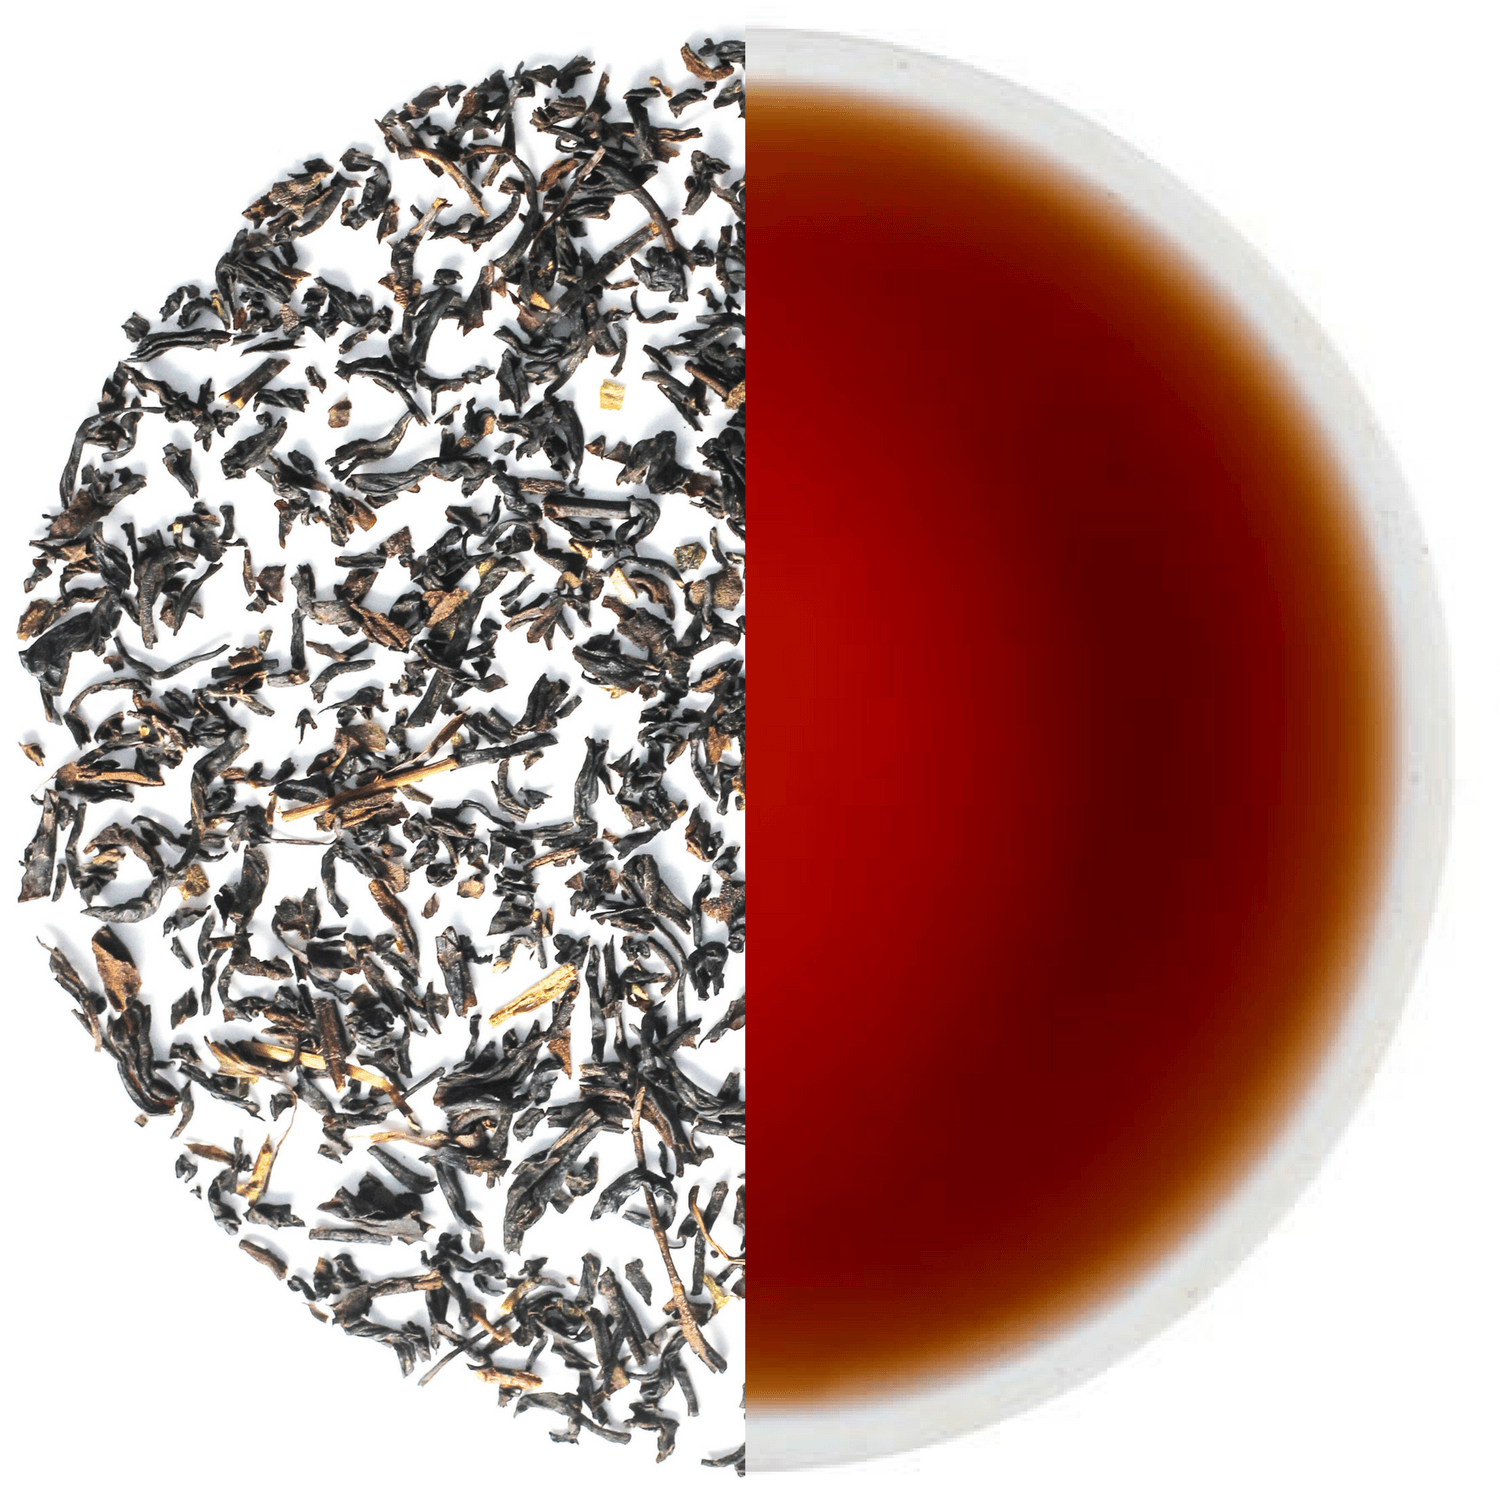 Roasted Darjeeling Tea - Tearaja